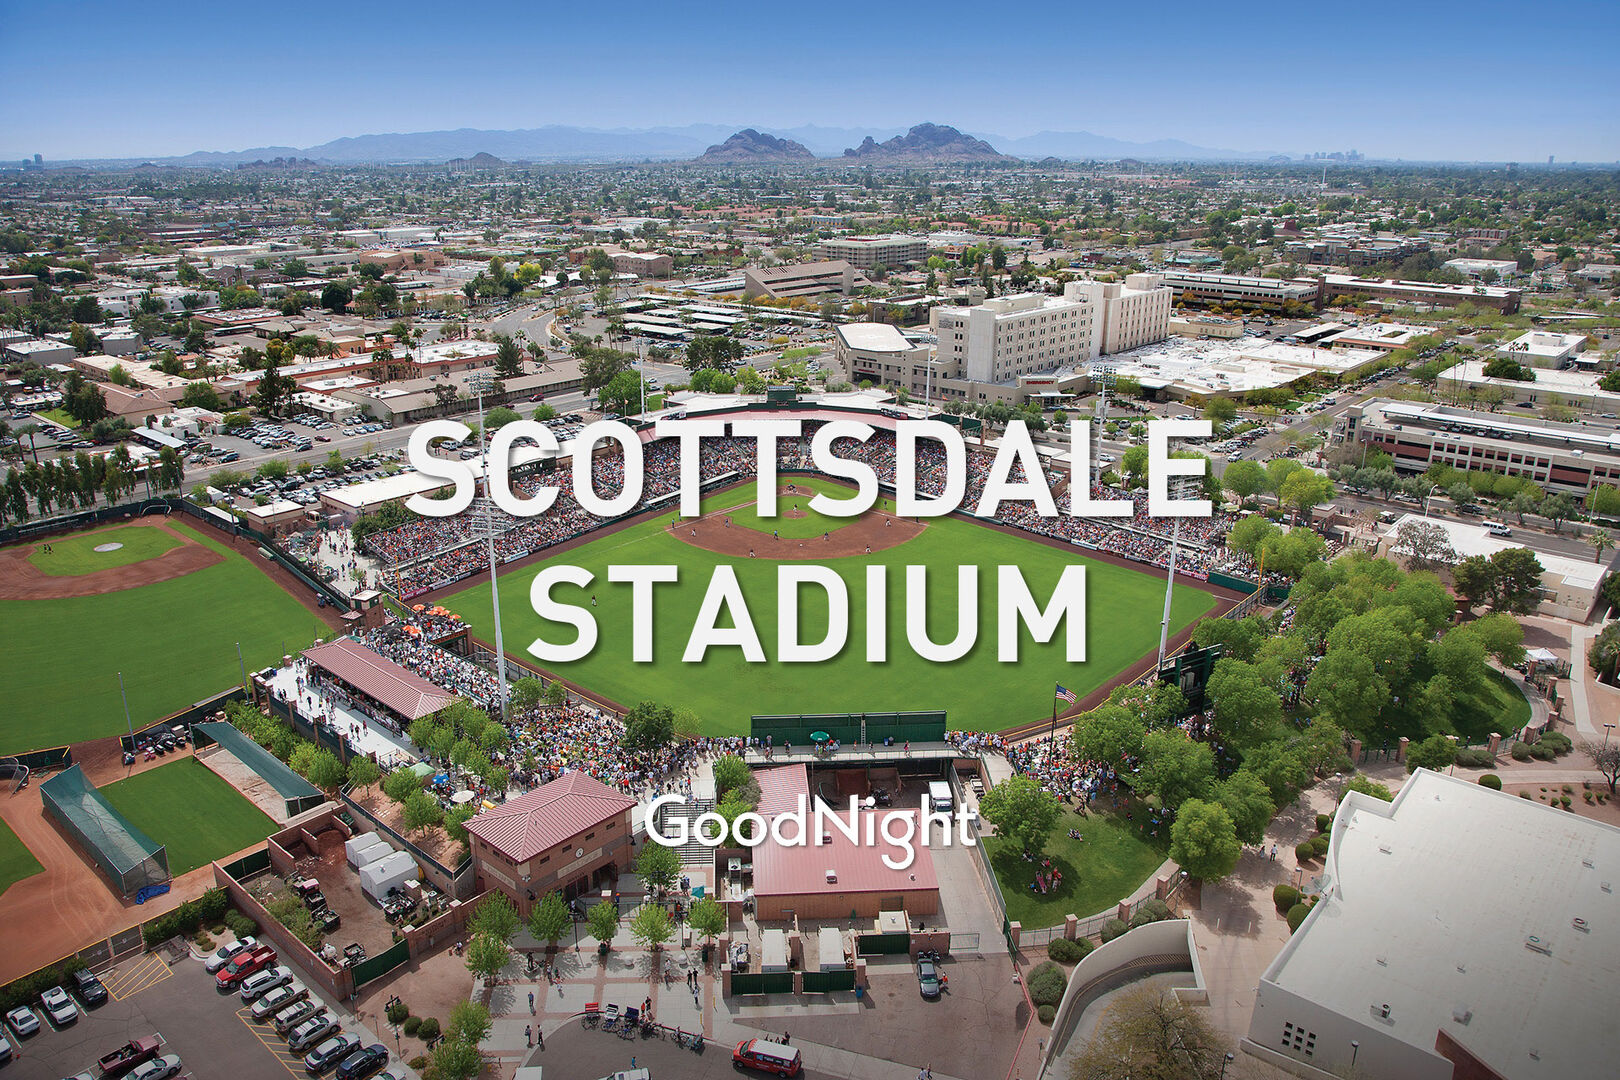 18 mins: Scottsdale Stadium